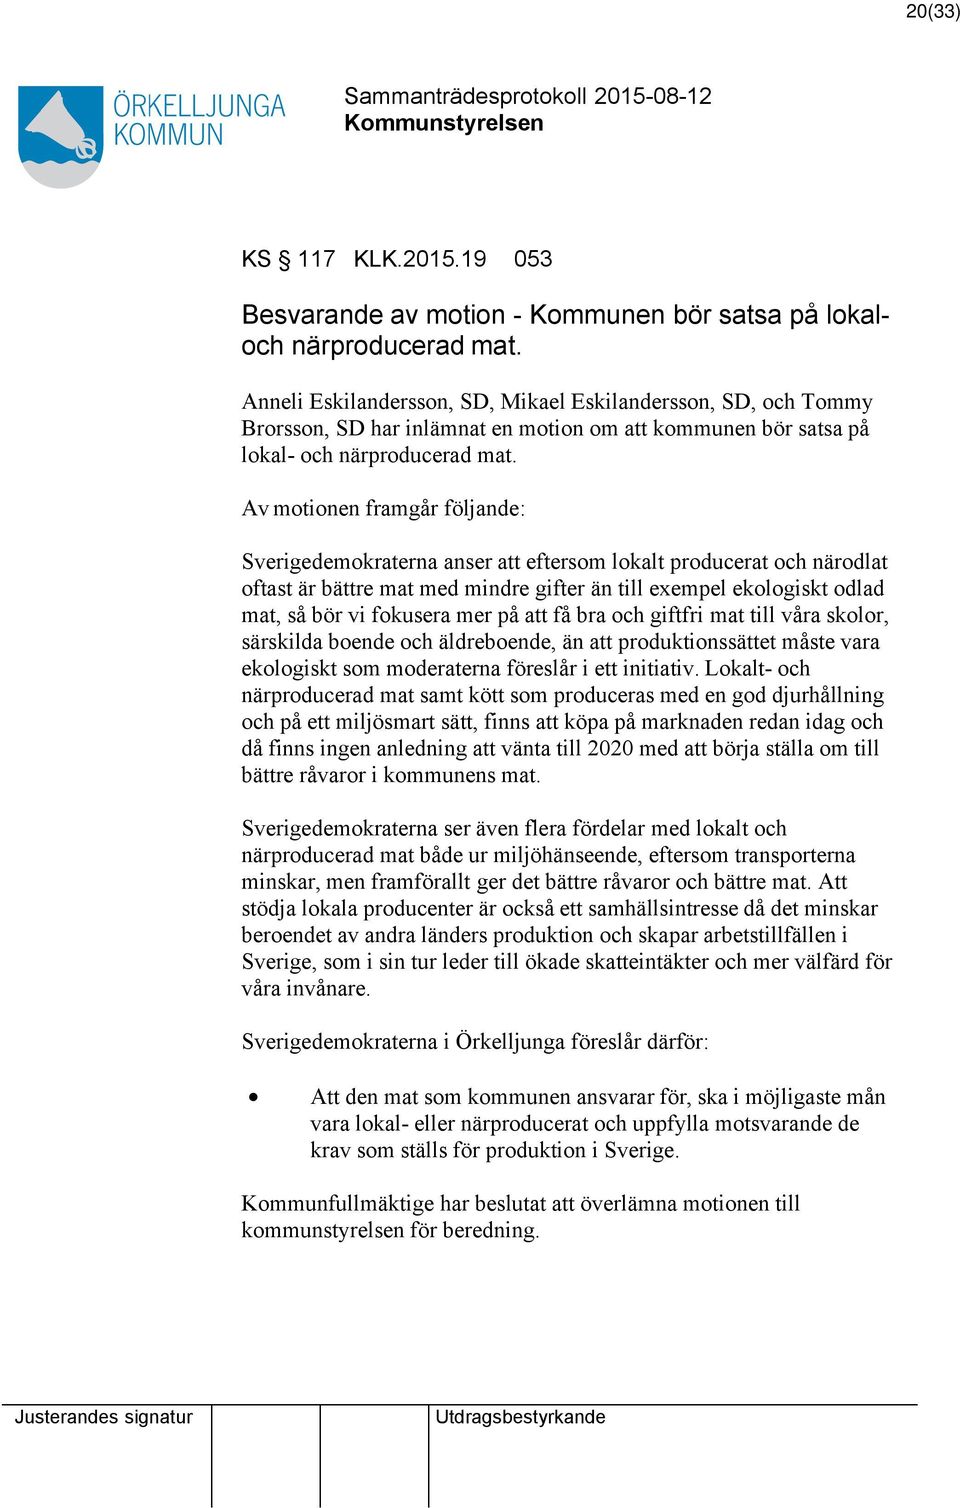 Av motionen framgår följande: Sverigedemokraterna anser eftersom lokalt producerat och närodlat oftast är bättre mat med mindre gifter än till exempel ekologiskt odlad mat, så bör vi fokusera mer på